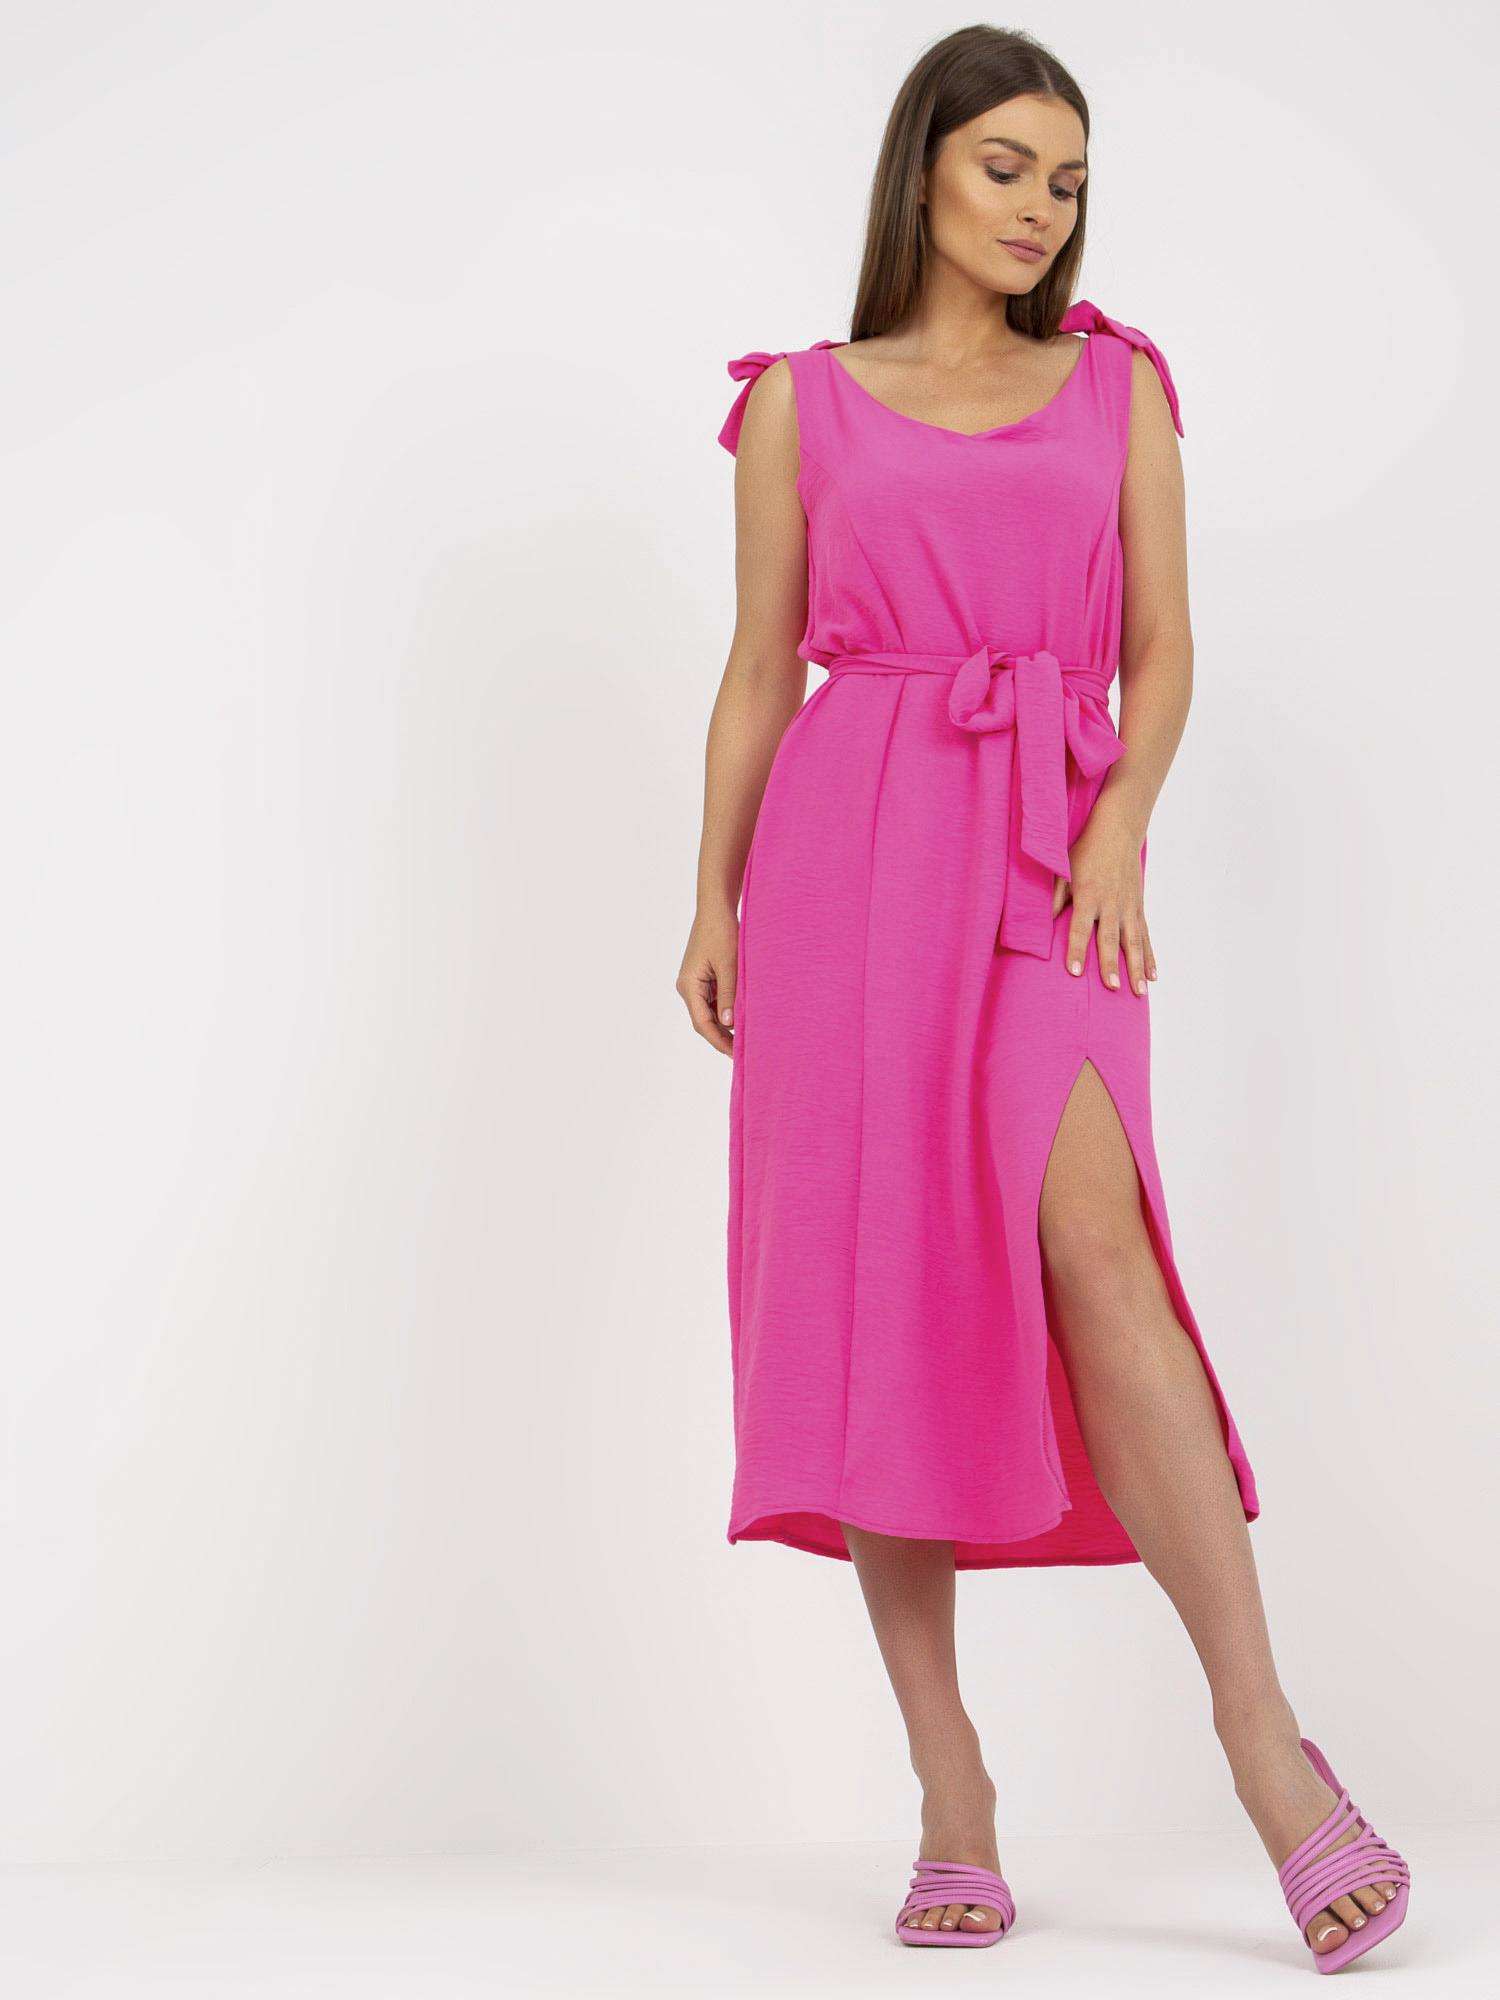 Dámske ružové šaty s rozparkom - M